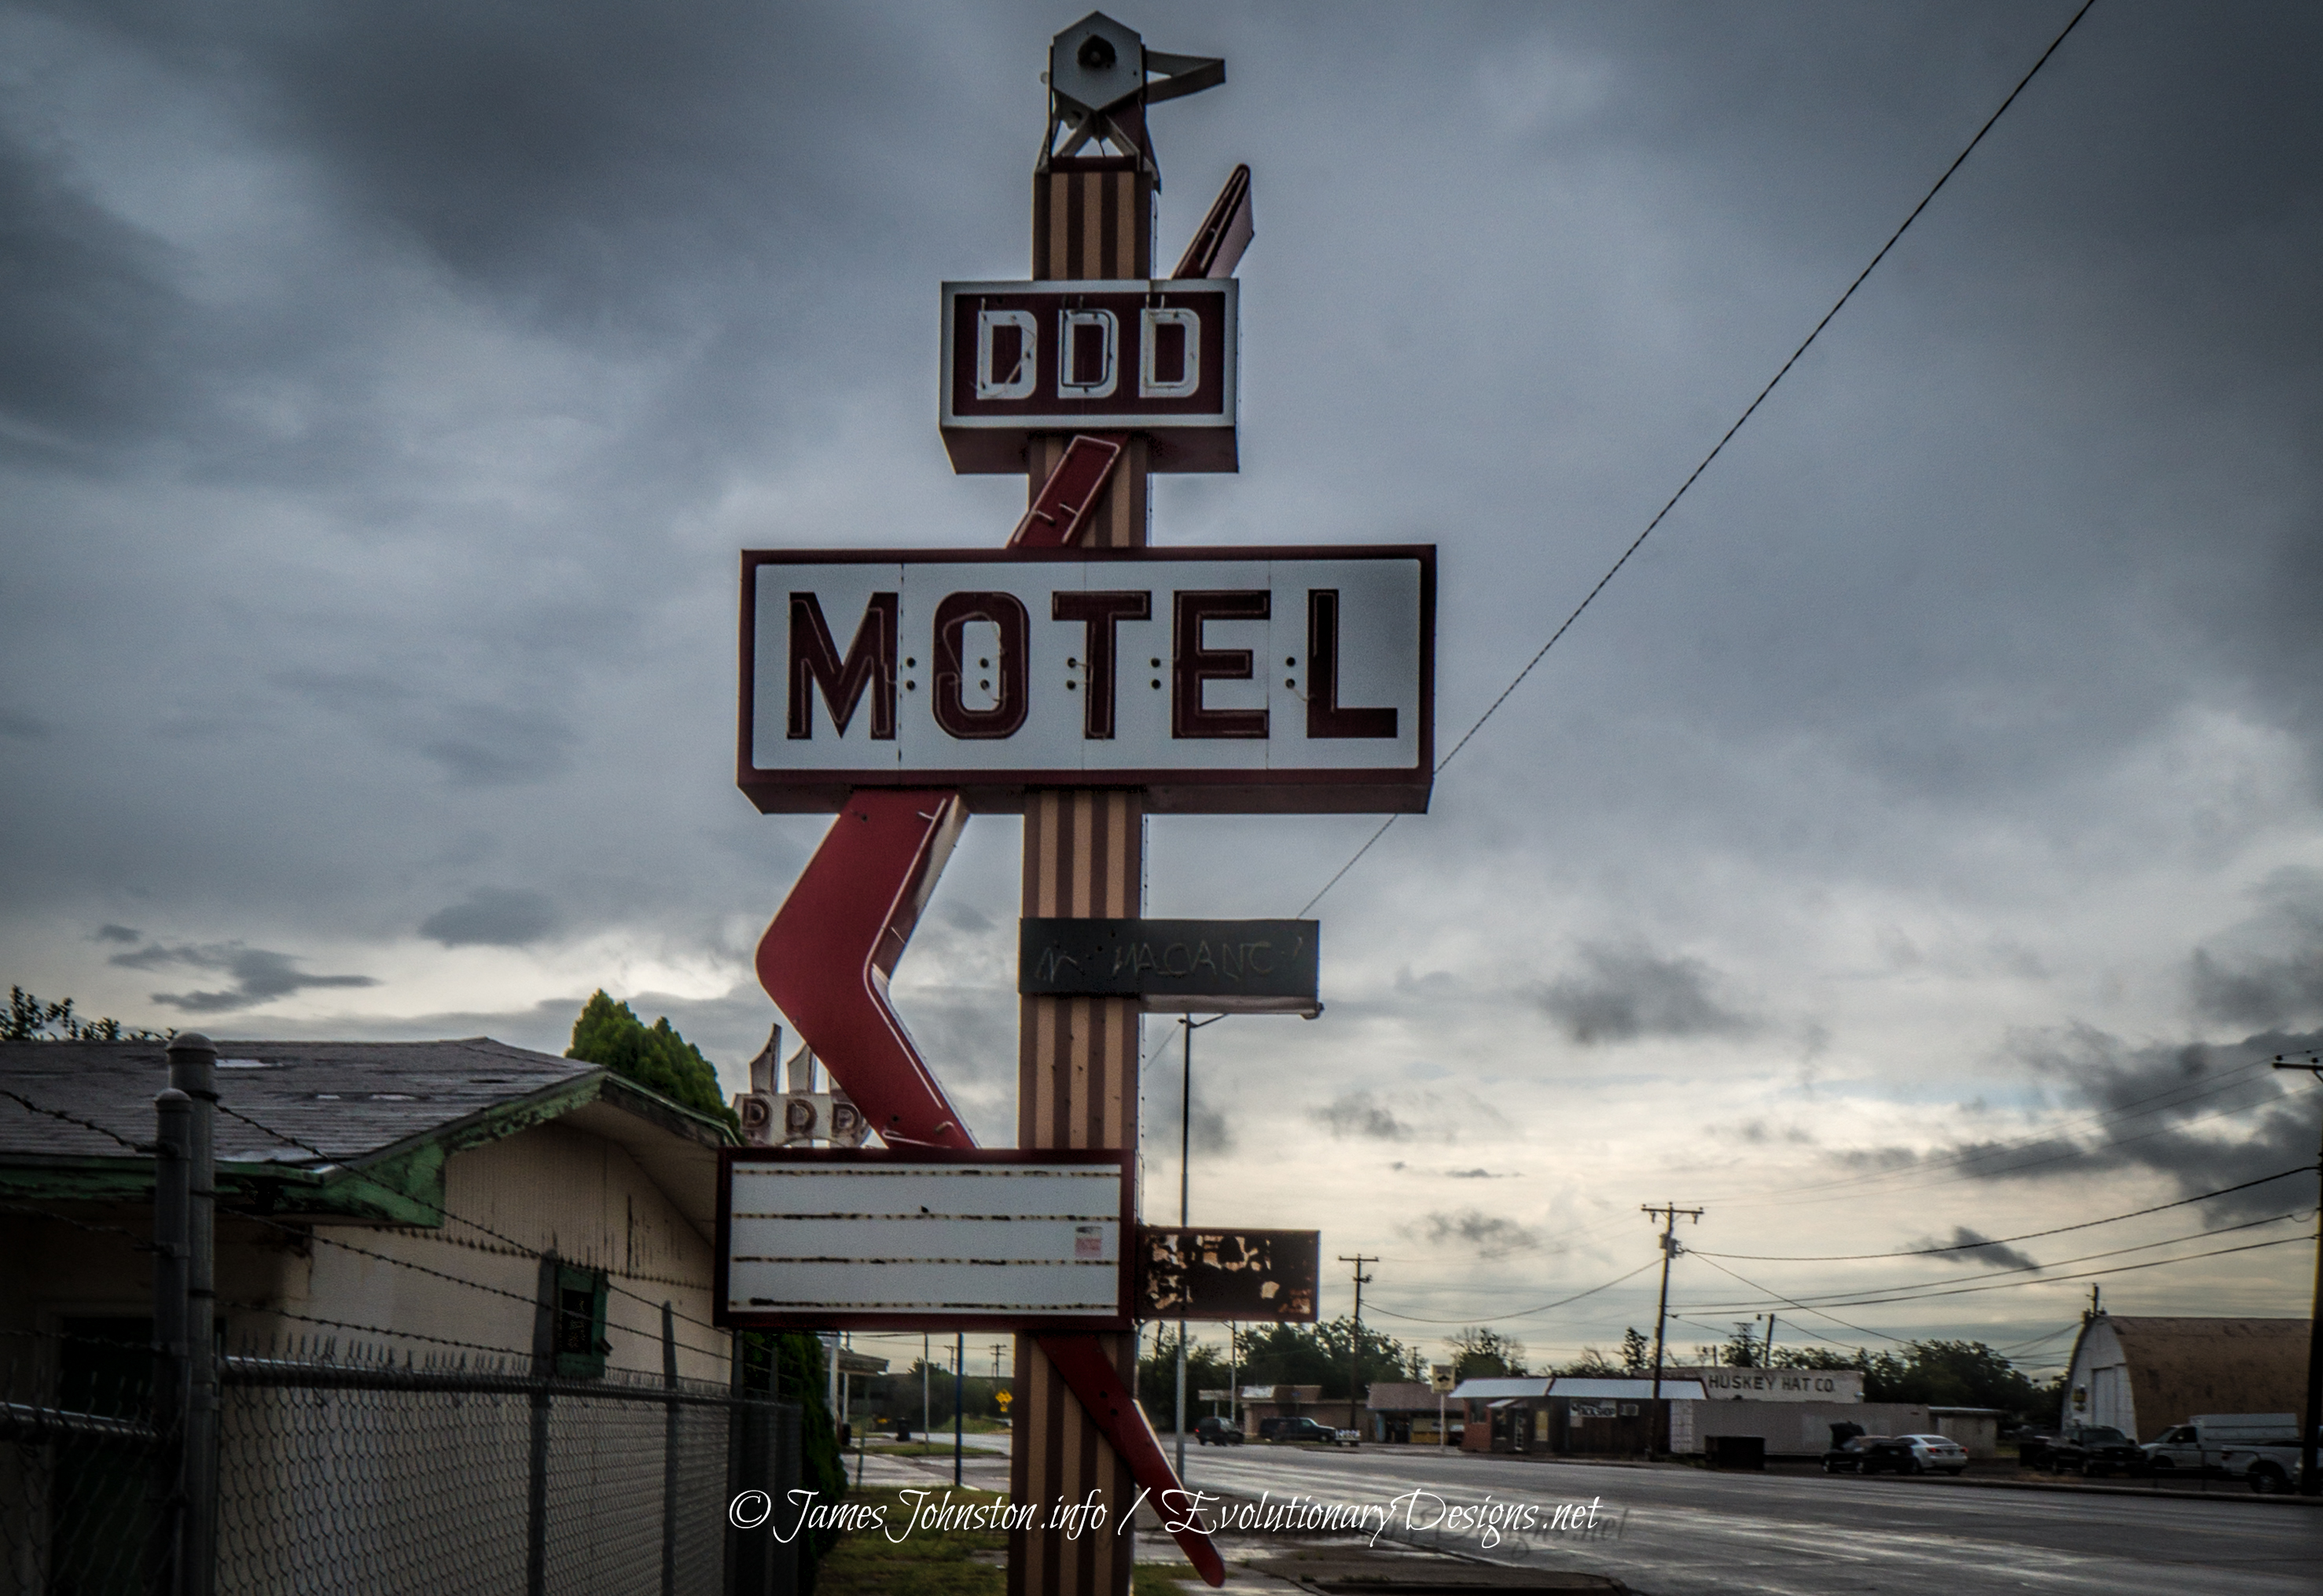 Triple DDD Motel 12